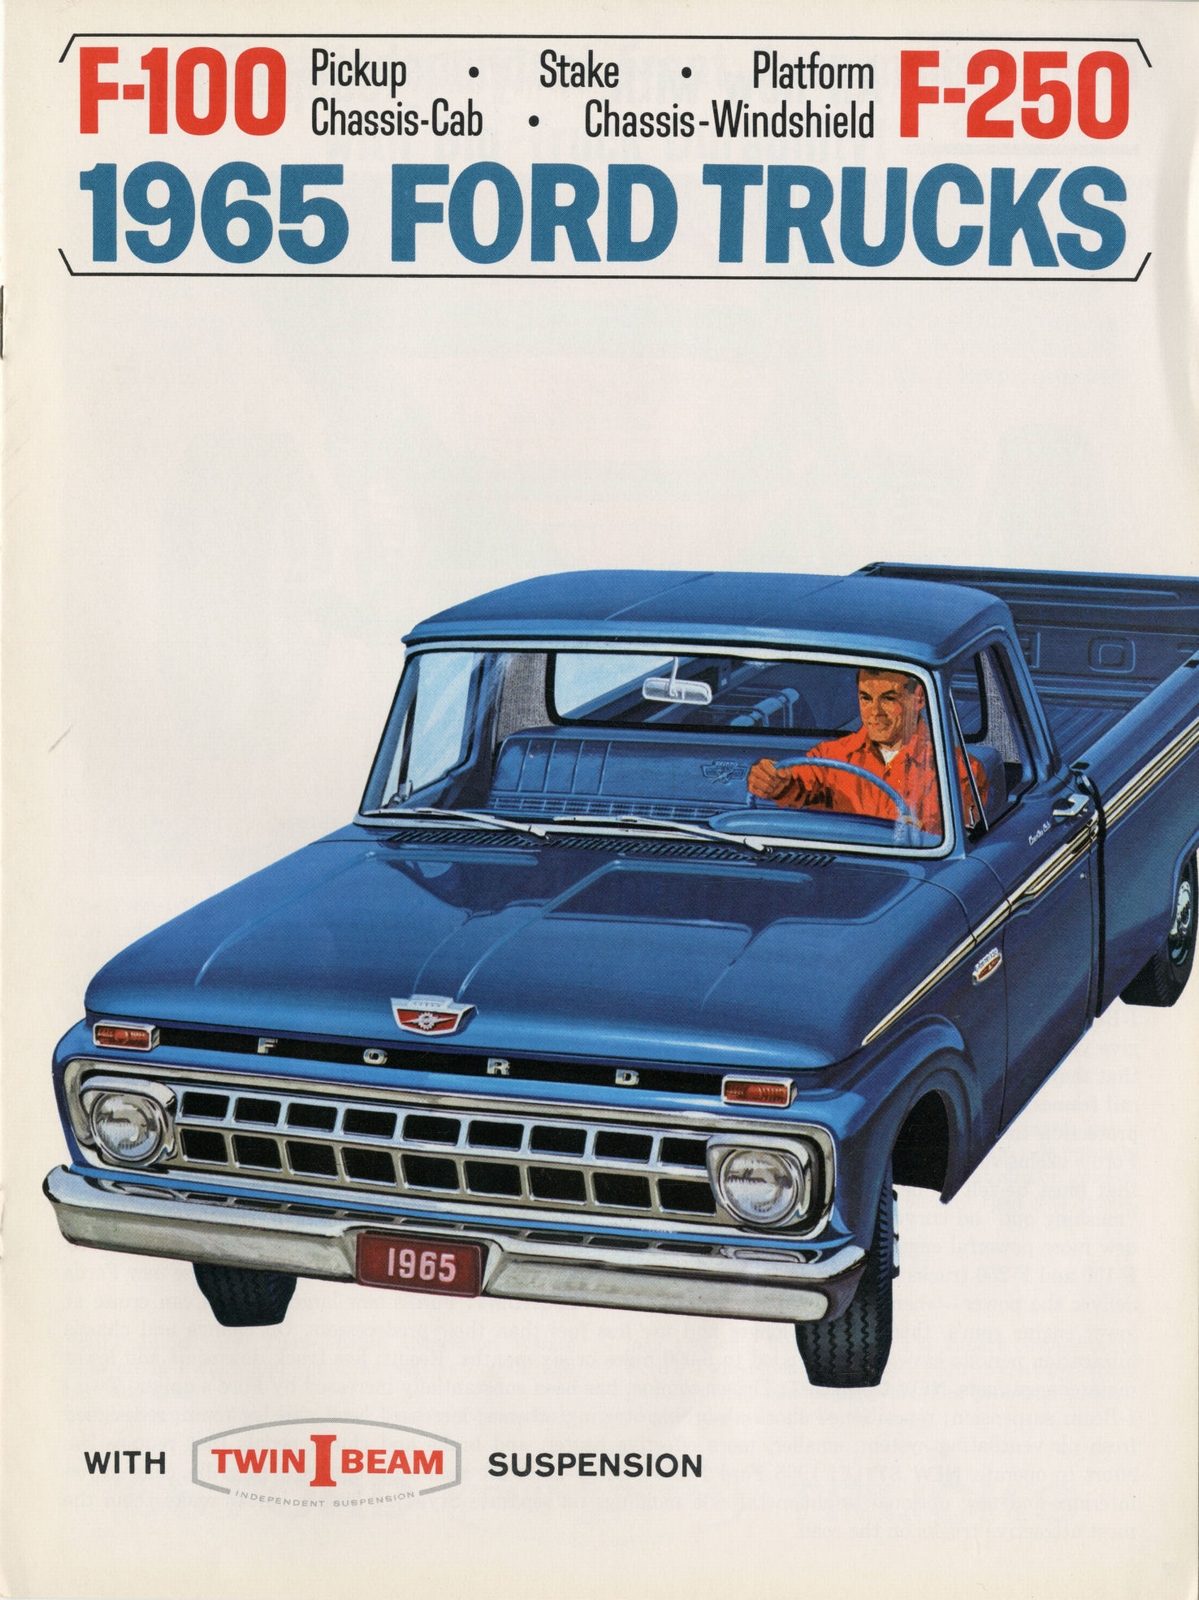 n_1965 Ford Trucks-01.jpg